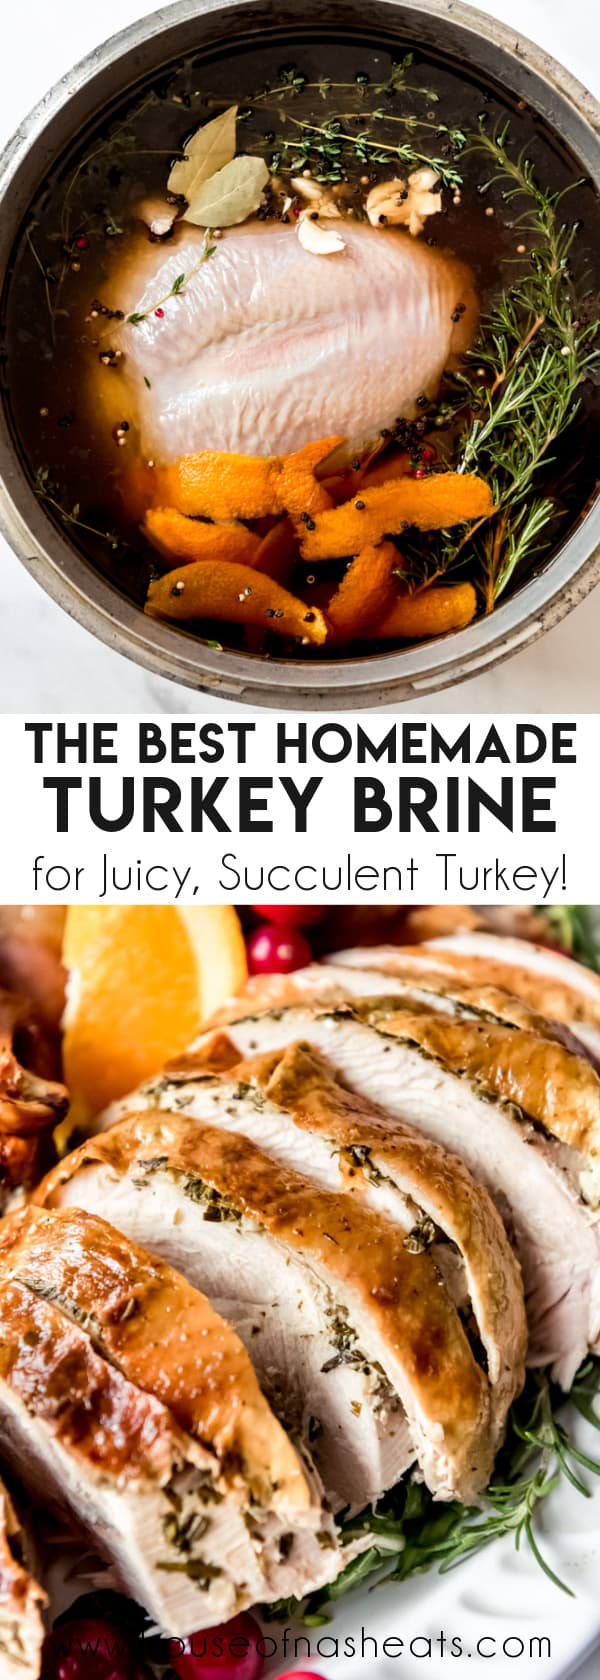 Best Turkey Brine Recipe - How to Make Turkey Brine from Scratch